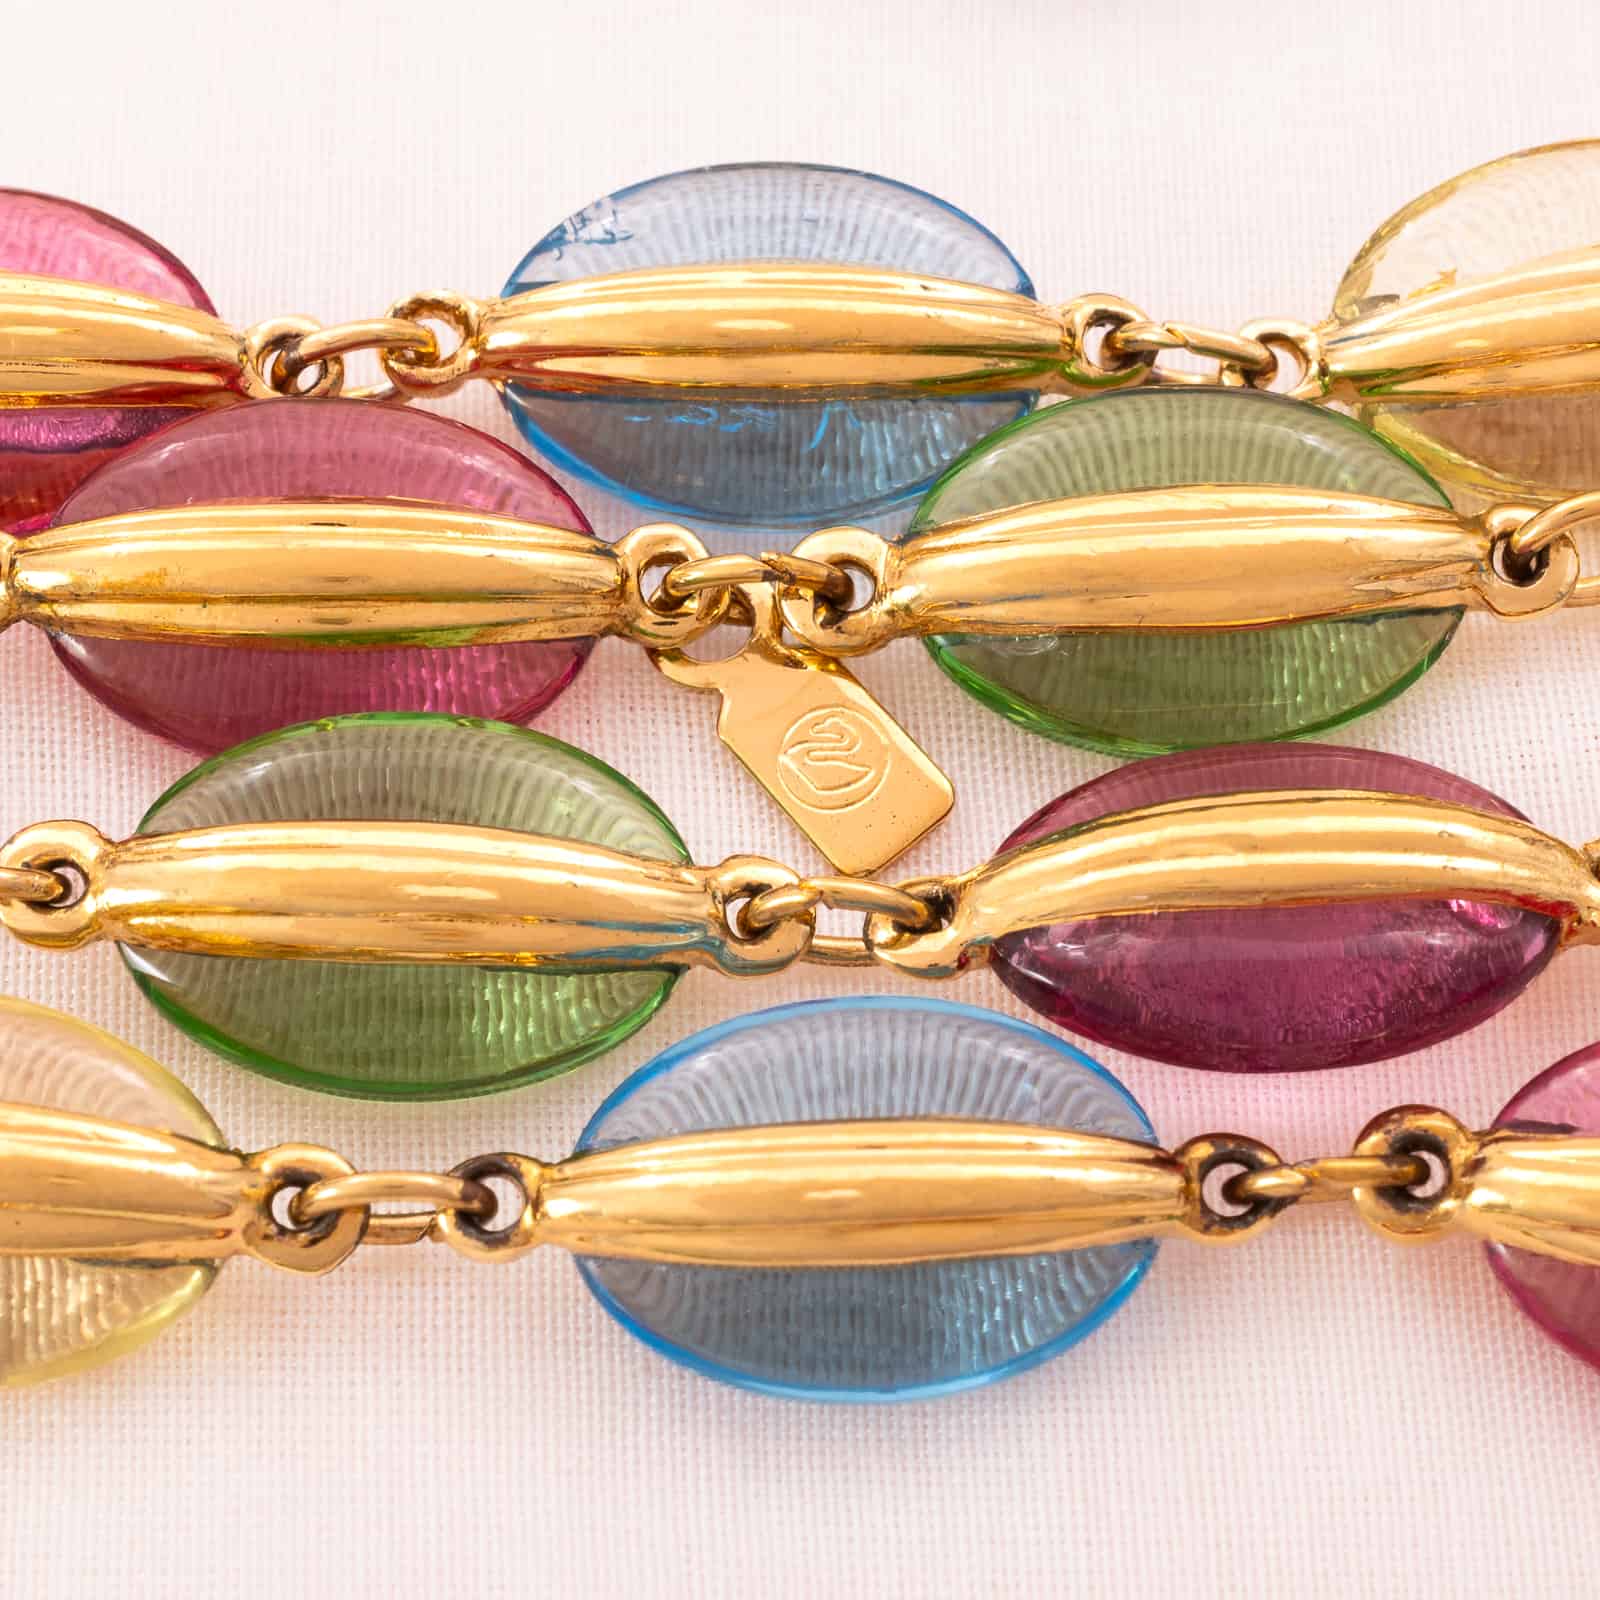 Swarovski-bunte-Halskette-ovale-Kristalle-vergoldete-Fassung-Schwan-Signatur